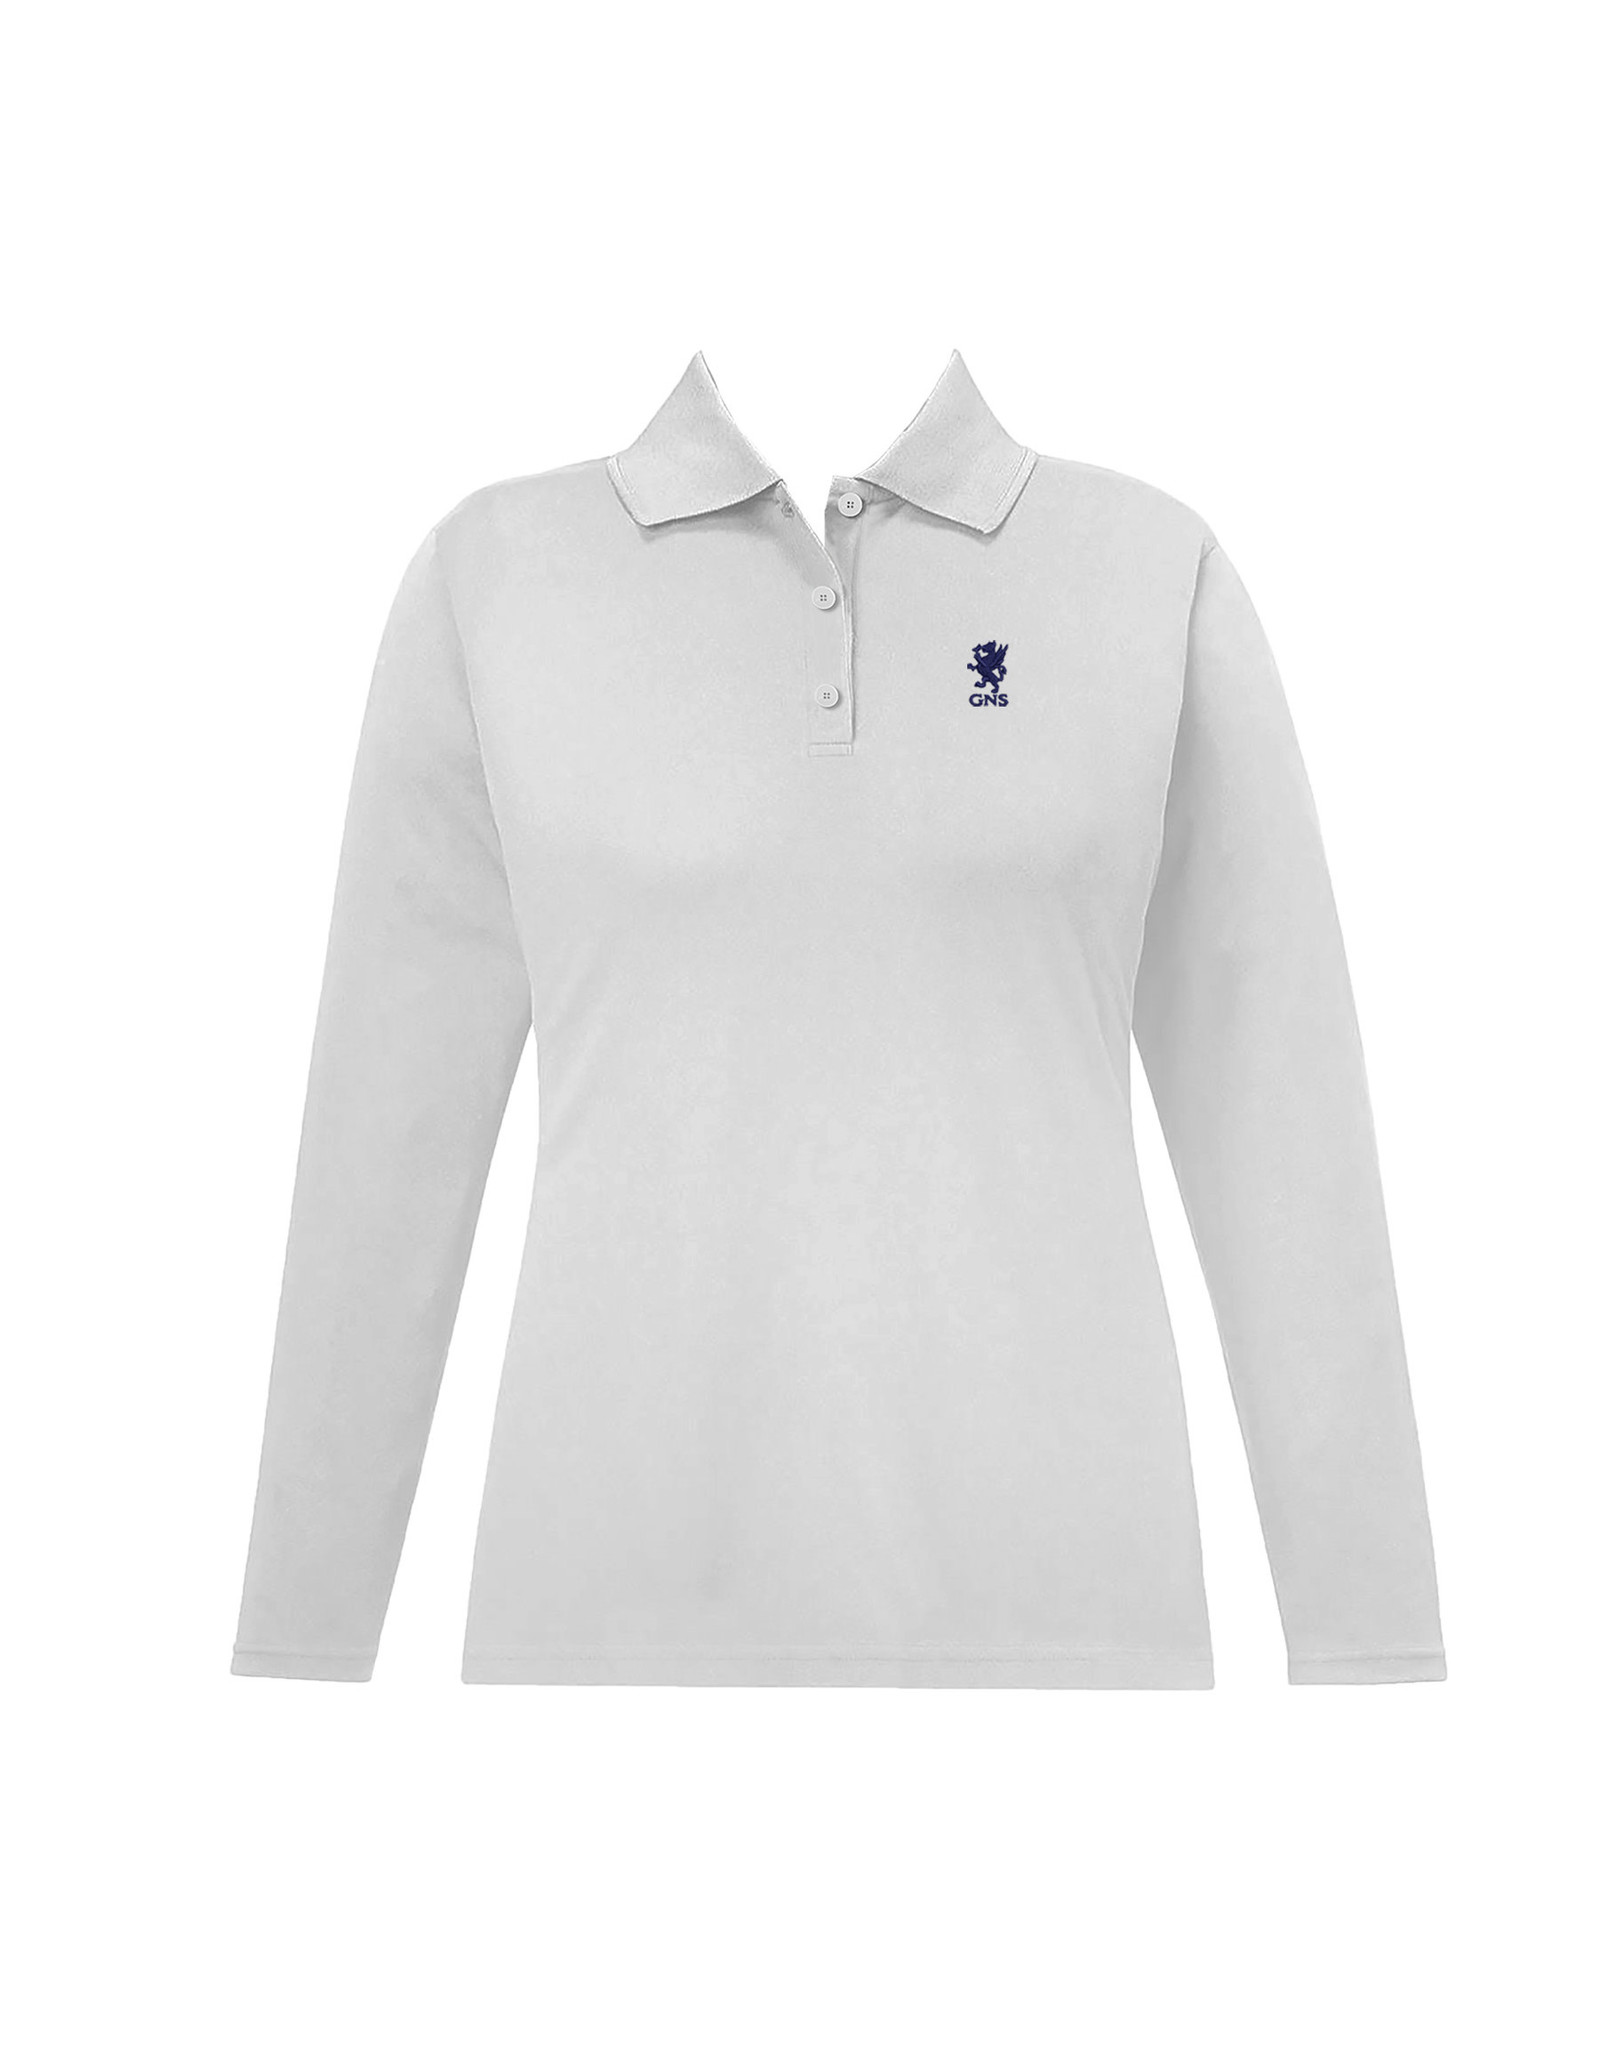 Cambridge Golf Shirt, Long Sleeve - Girls